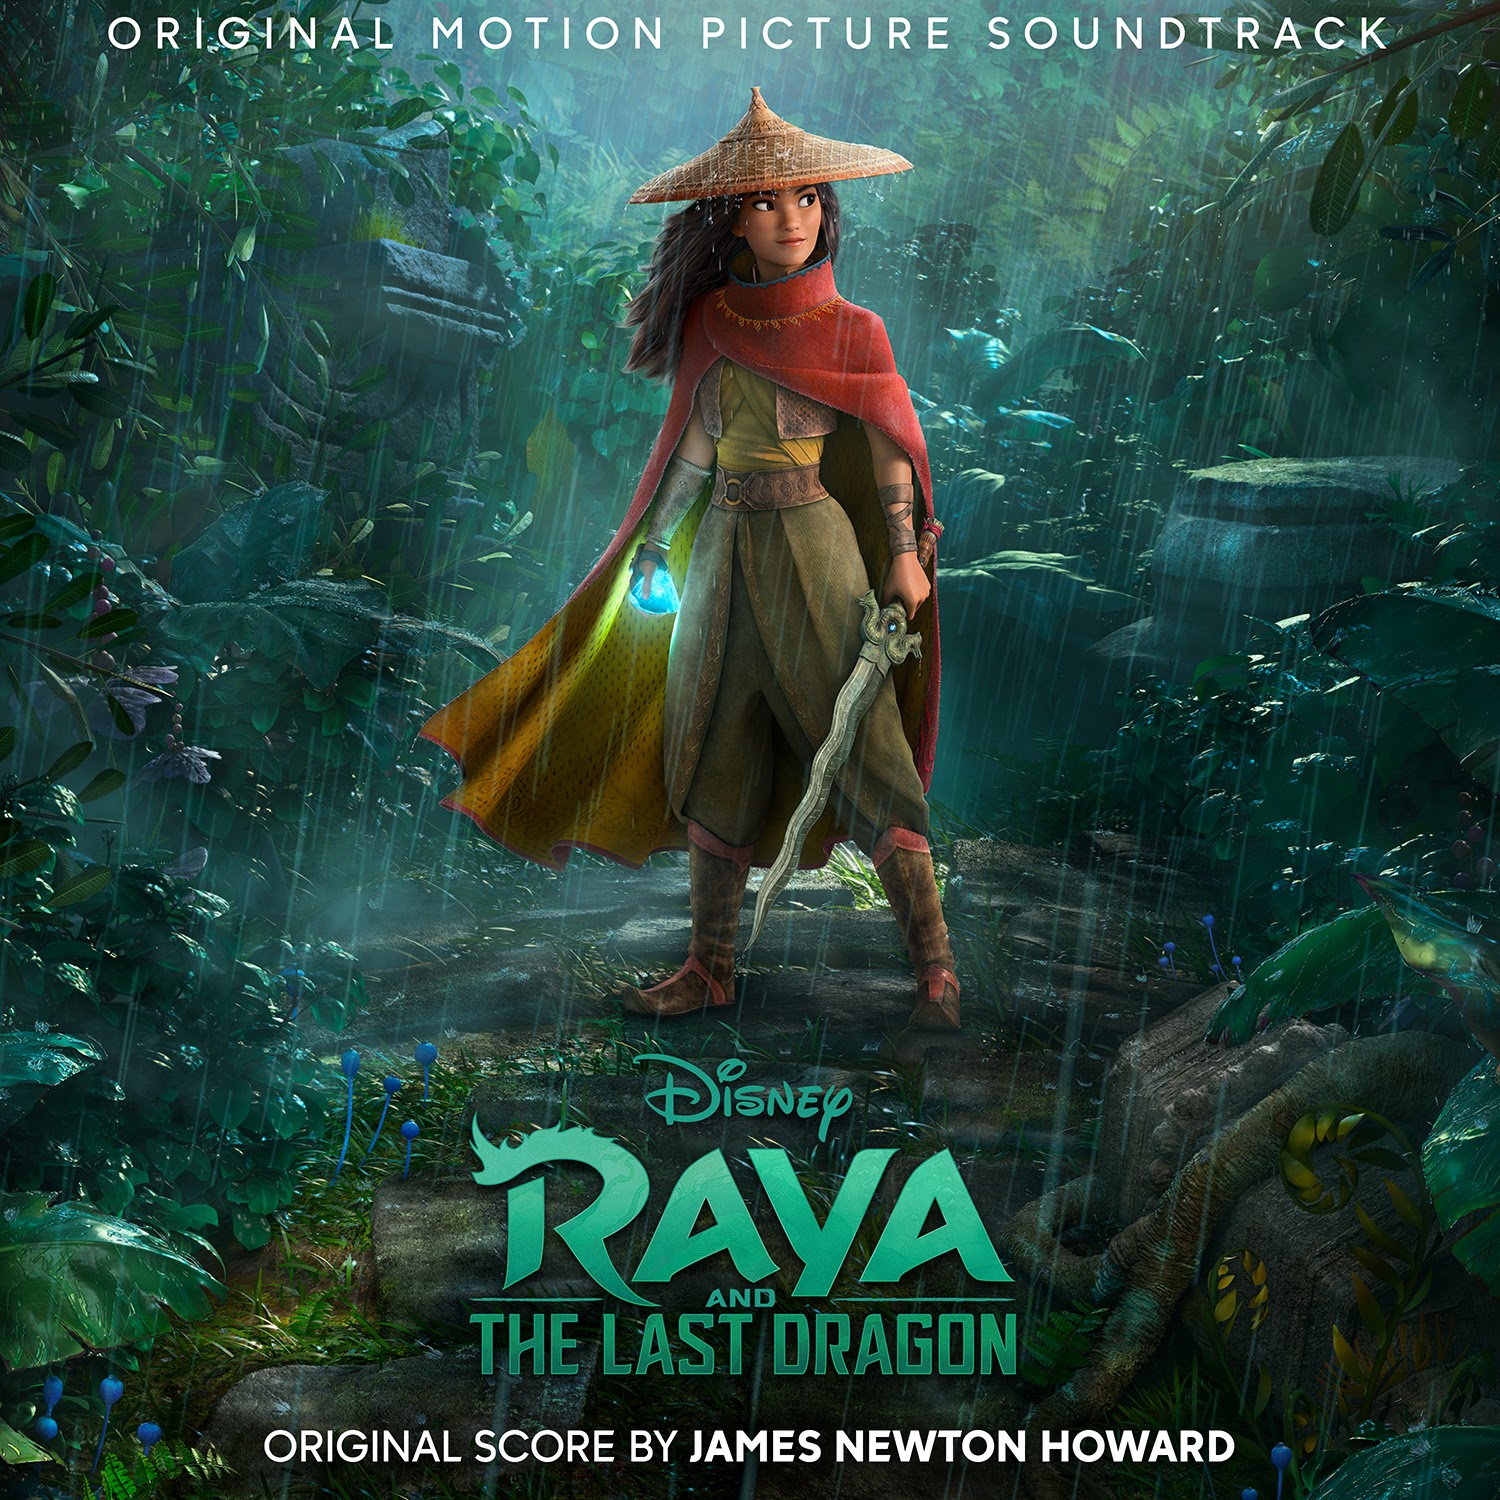 Siêu phẩm hoạt hình Disney - ‘Raya and the Last Dragon’  tung nhạc phim chính thức, dọn đường cho ngày ra rạp